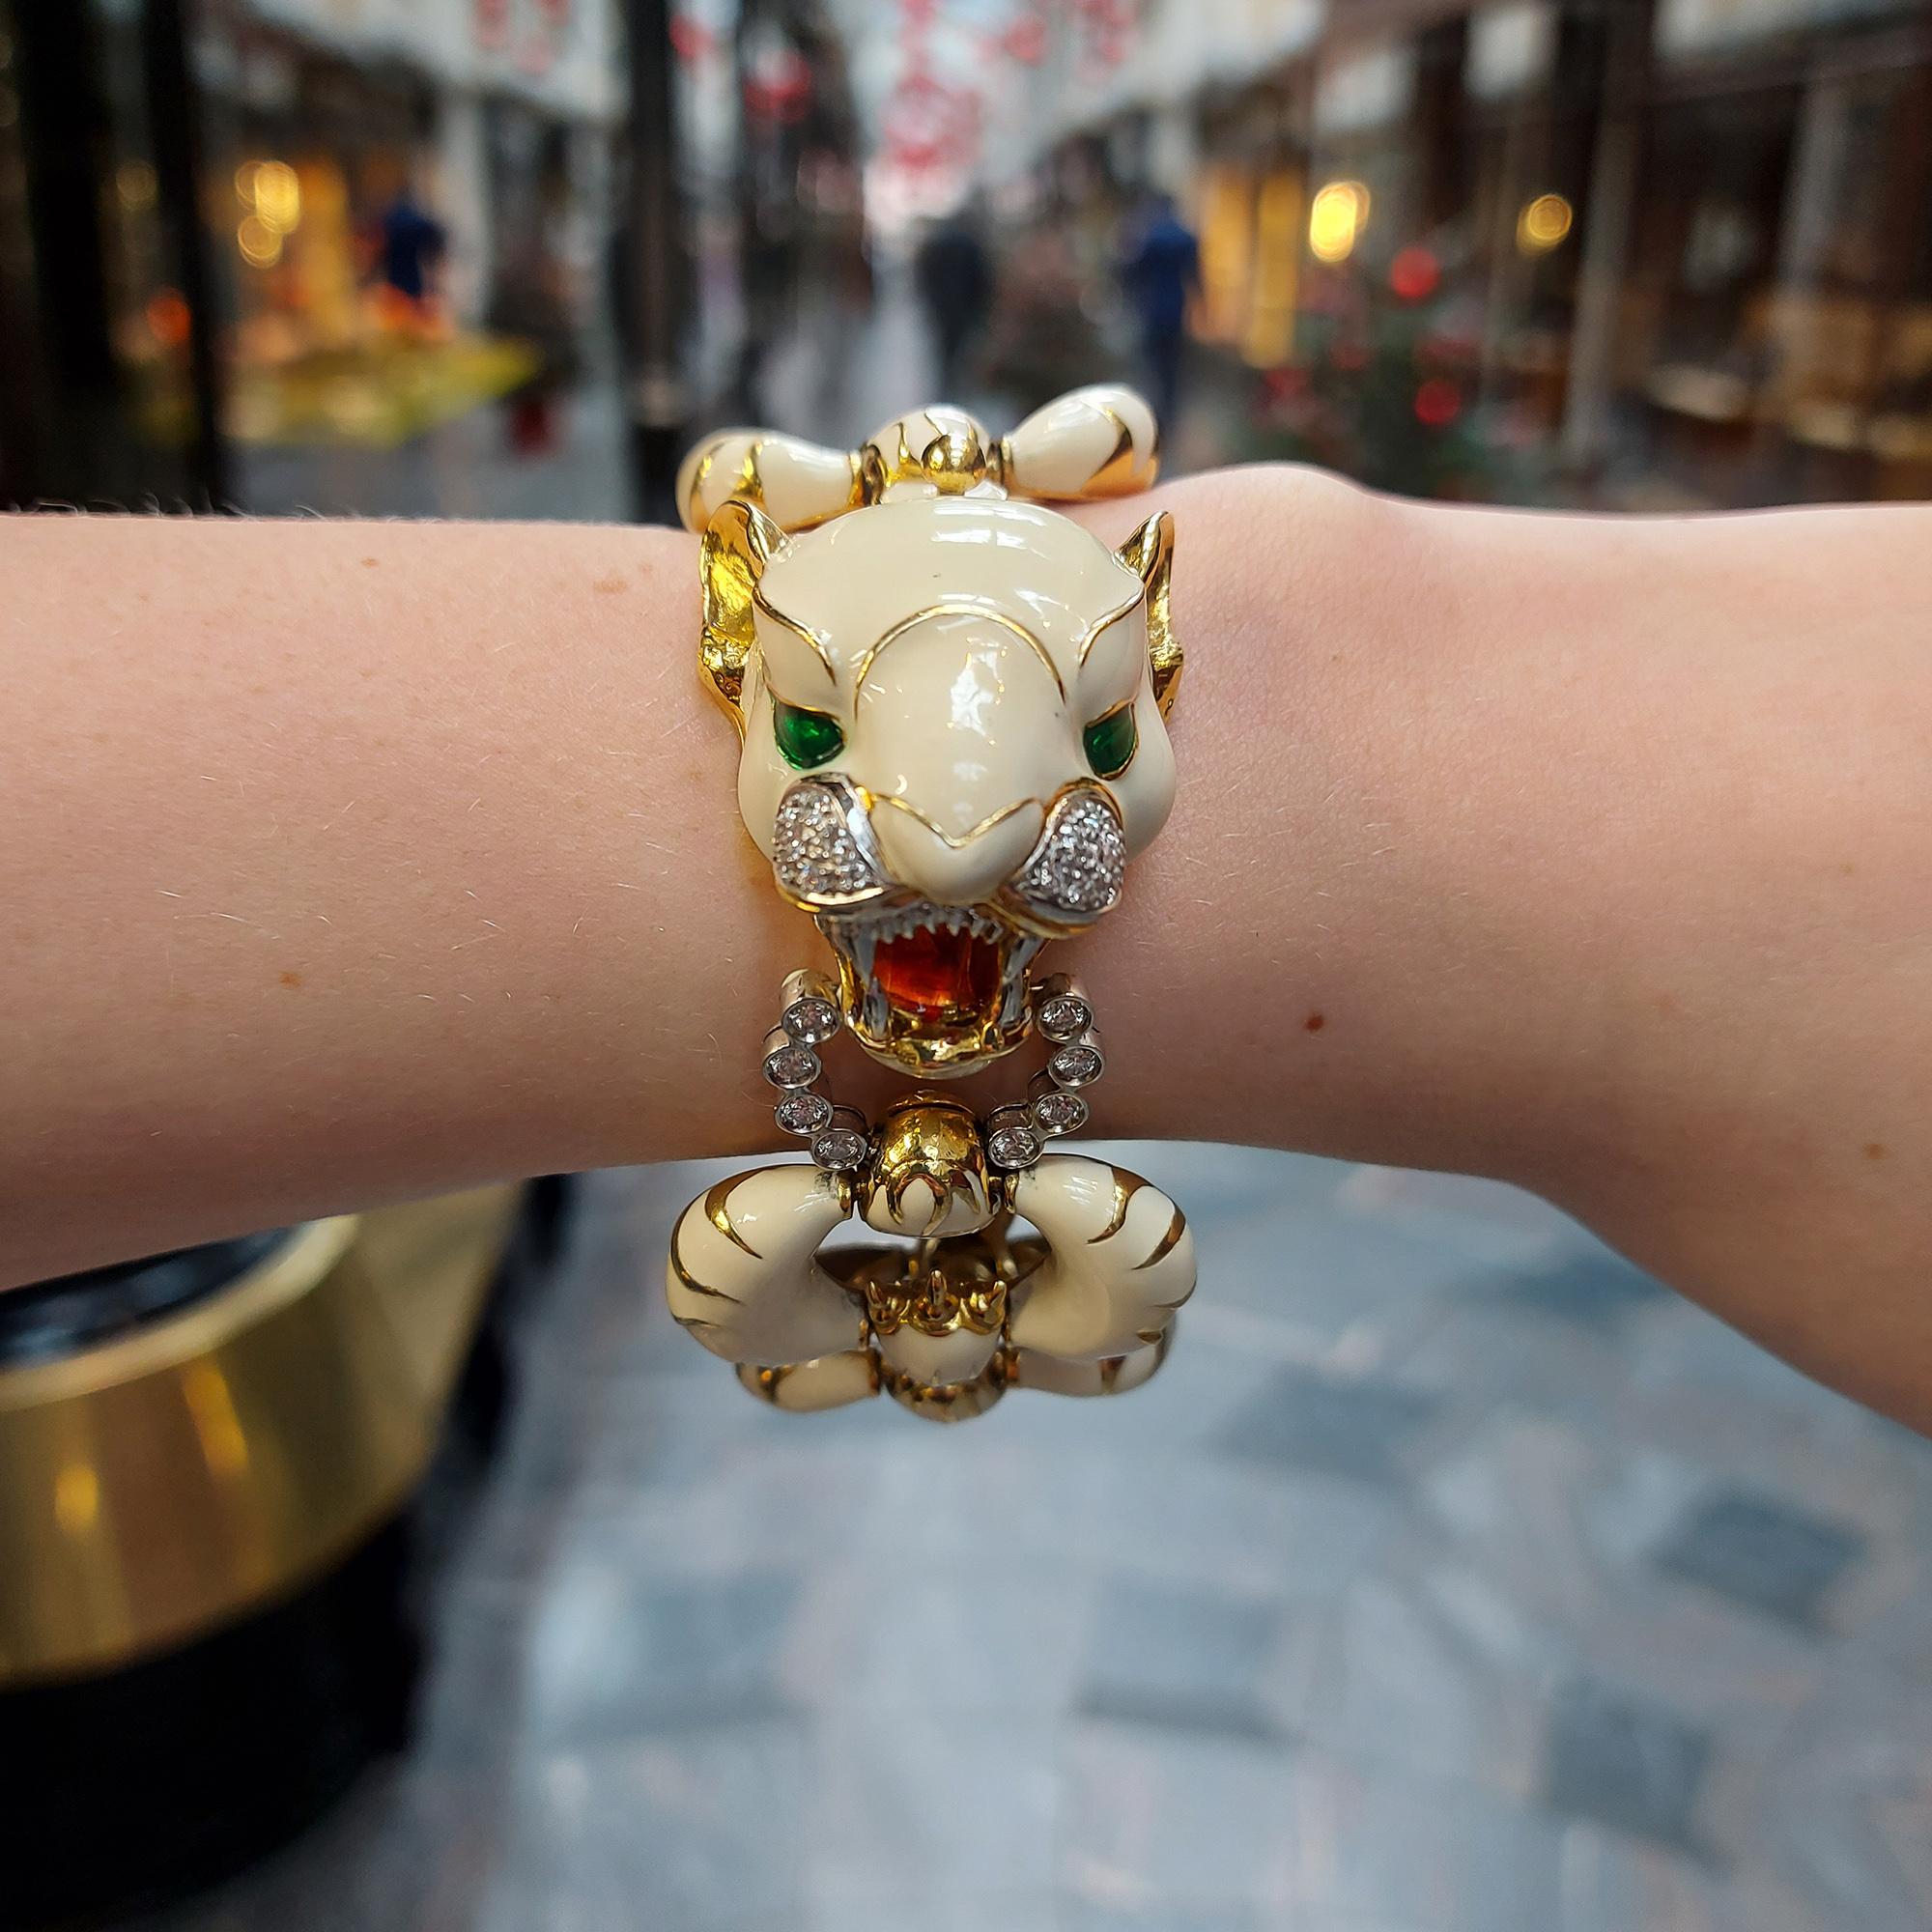 Un magnifique bracelet unique en émail et en diamants représentant un tigre de Sibérie, serti en or jaune 18 carats.

La pièce, qui a pour modèle un tigre de Sibérie, est entièrement recouverte d'émail légèrement blanc cassé. Elle a été